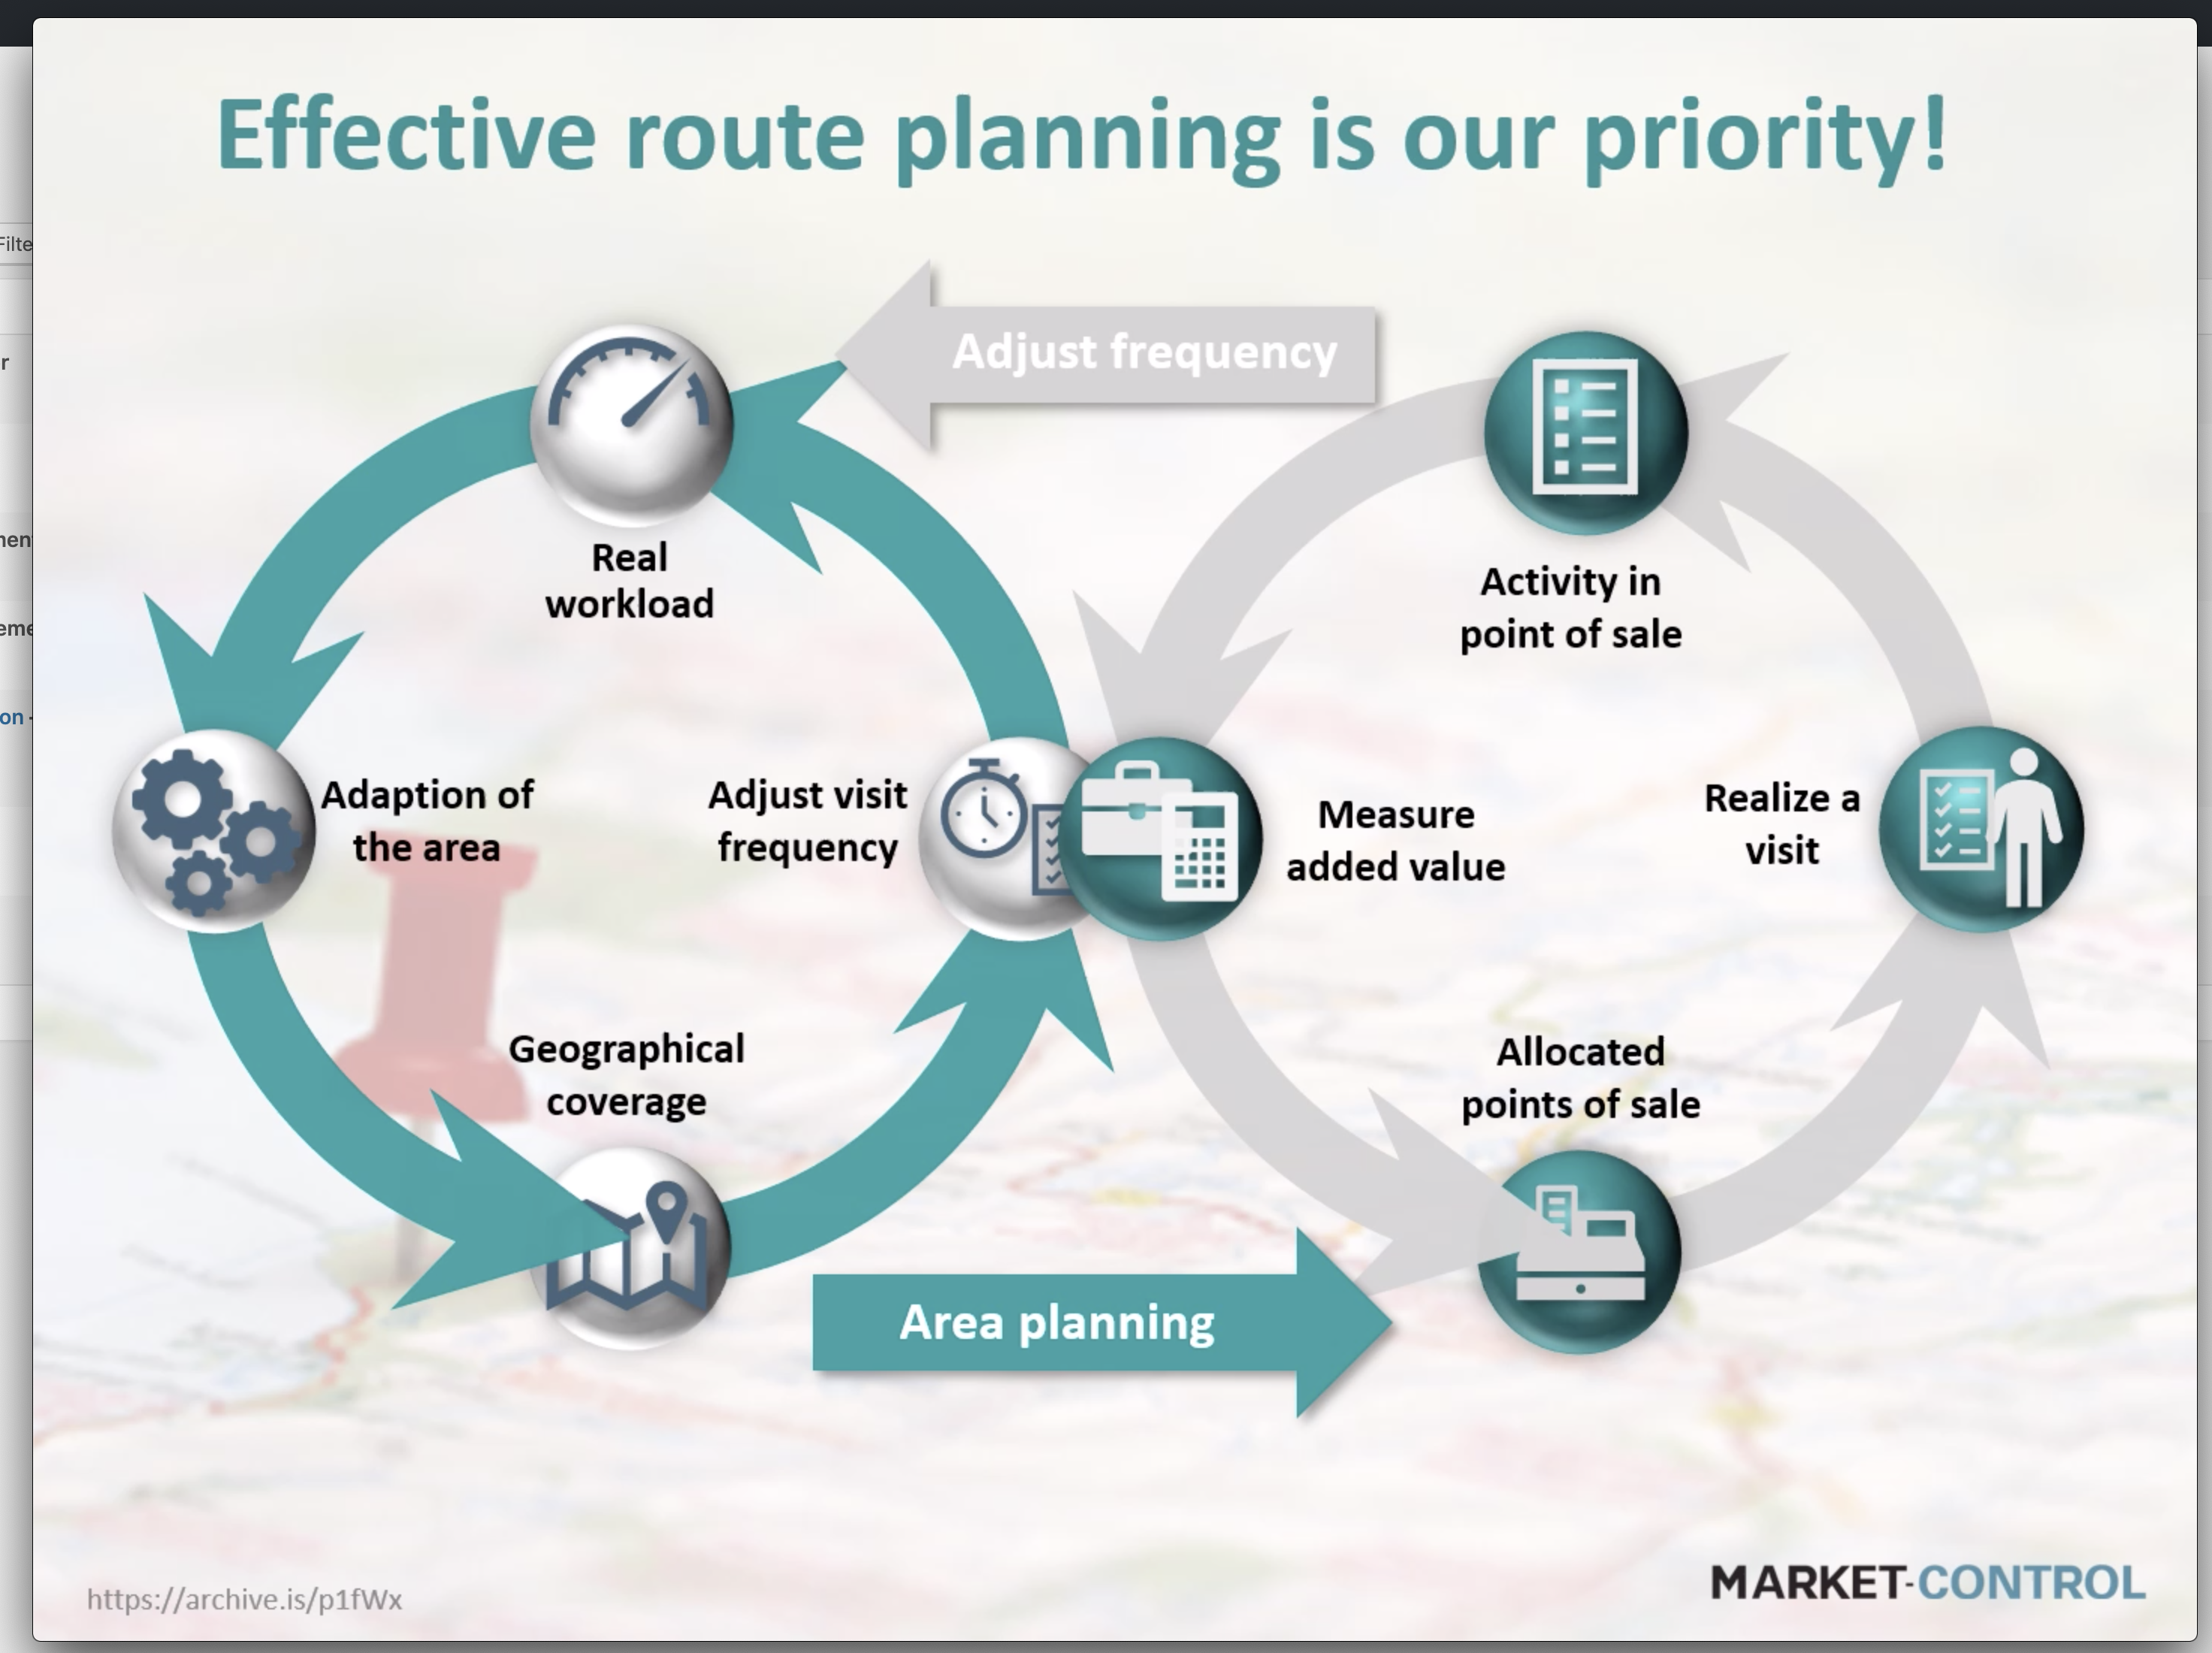 ¡La planificación efectiva de la ruta es nuestra prioridad!